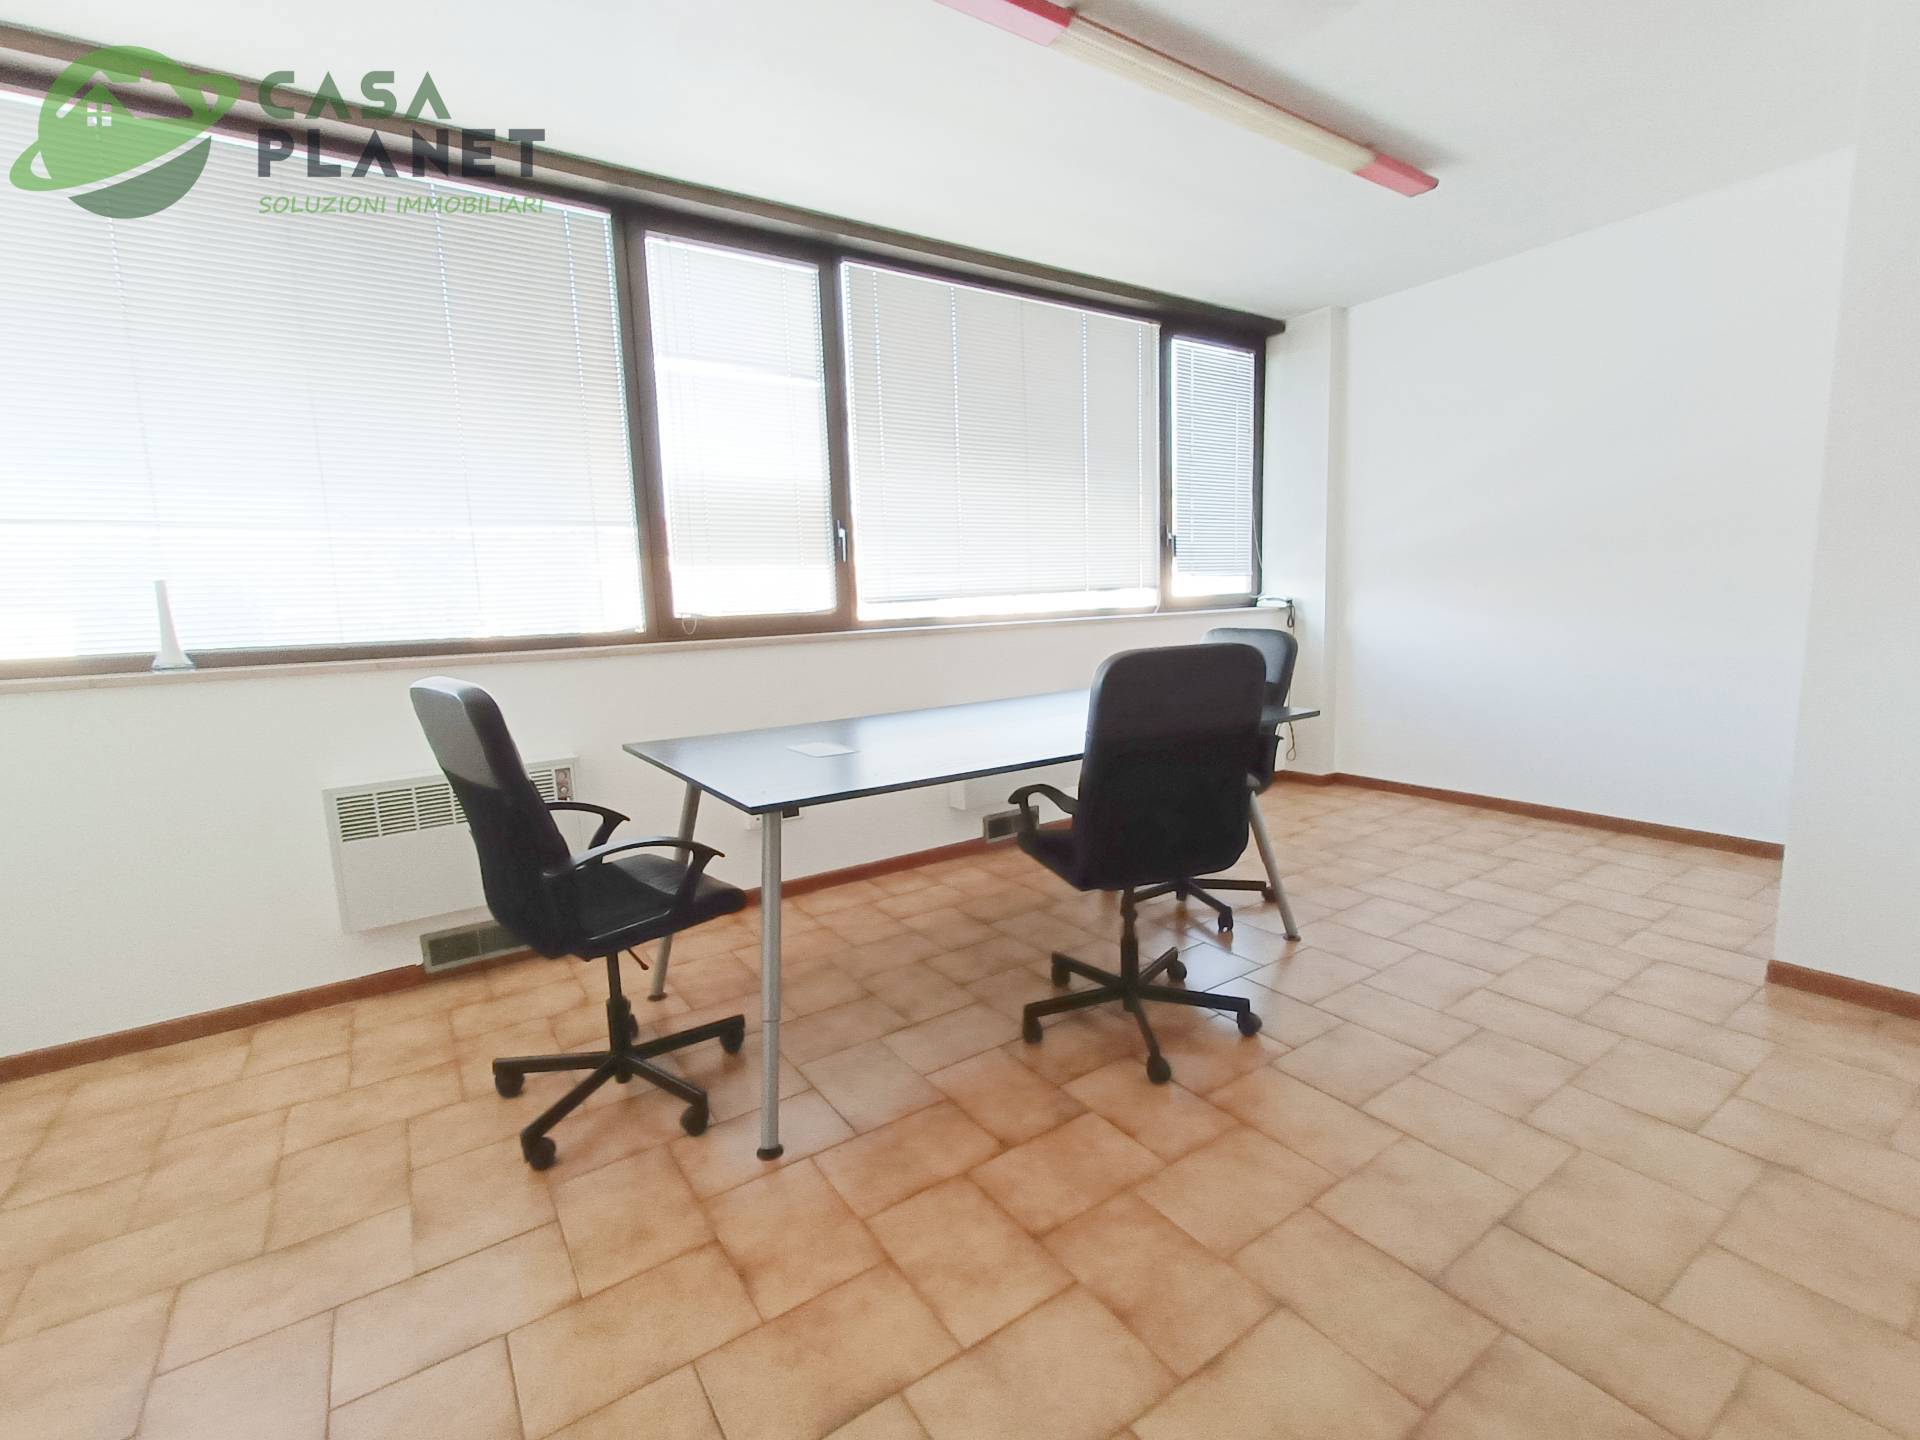 Ufficio / Studio in affitto a Mogliano Veneto, 9999 locali, prezzo € 500 | PortaleAgenzieImmobiliari.it